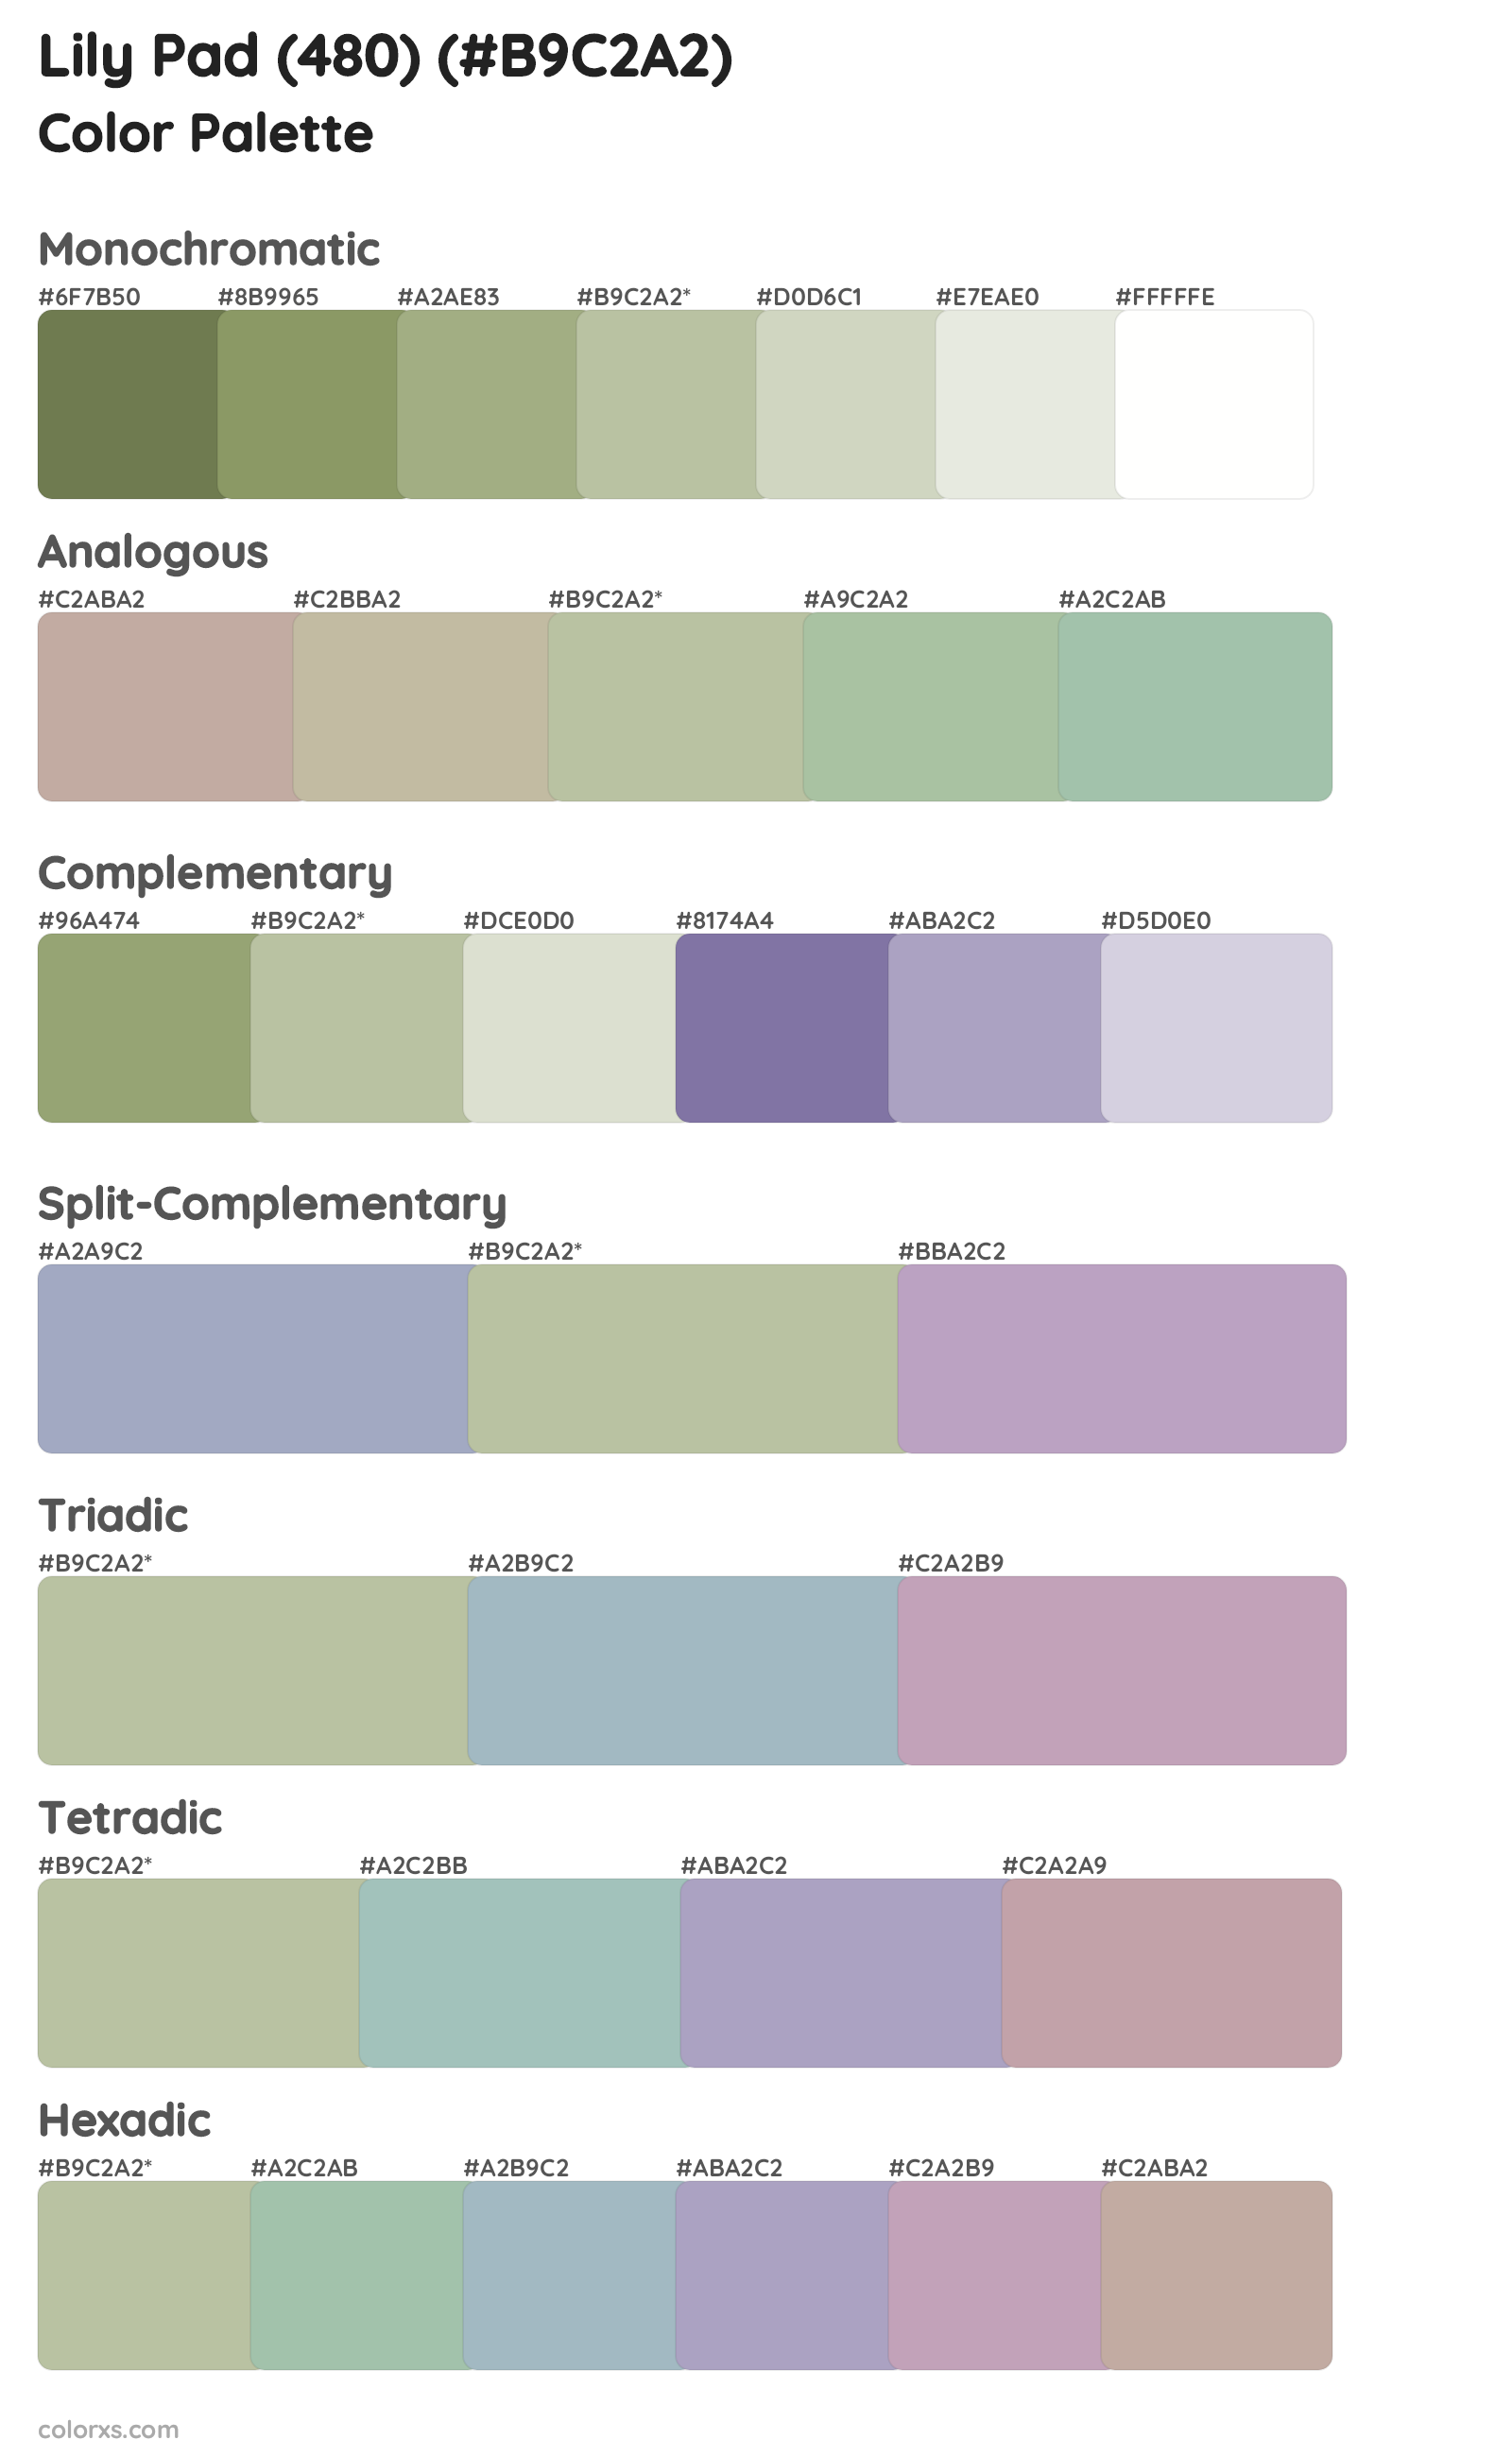 Lily Pad (480) Color Scheme Palettes